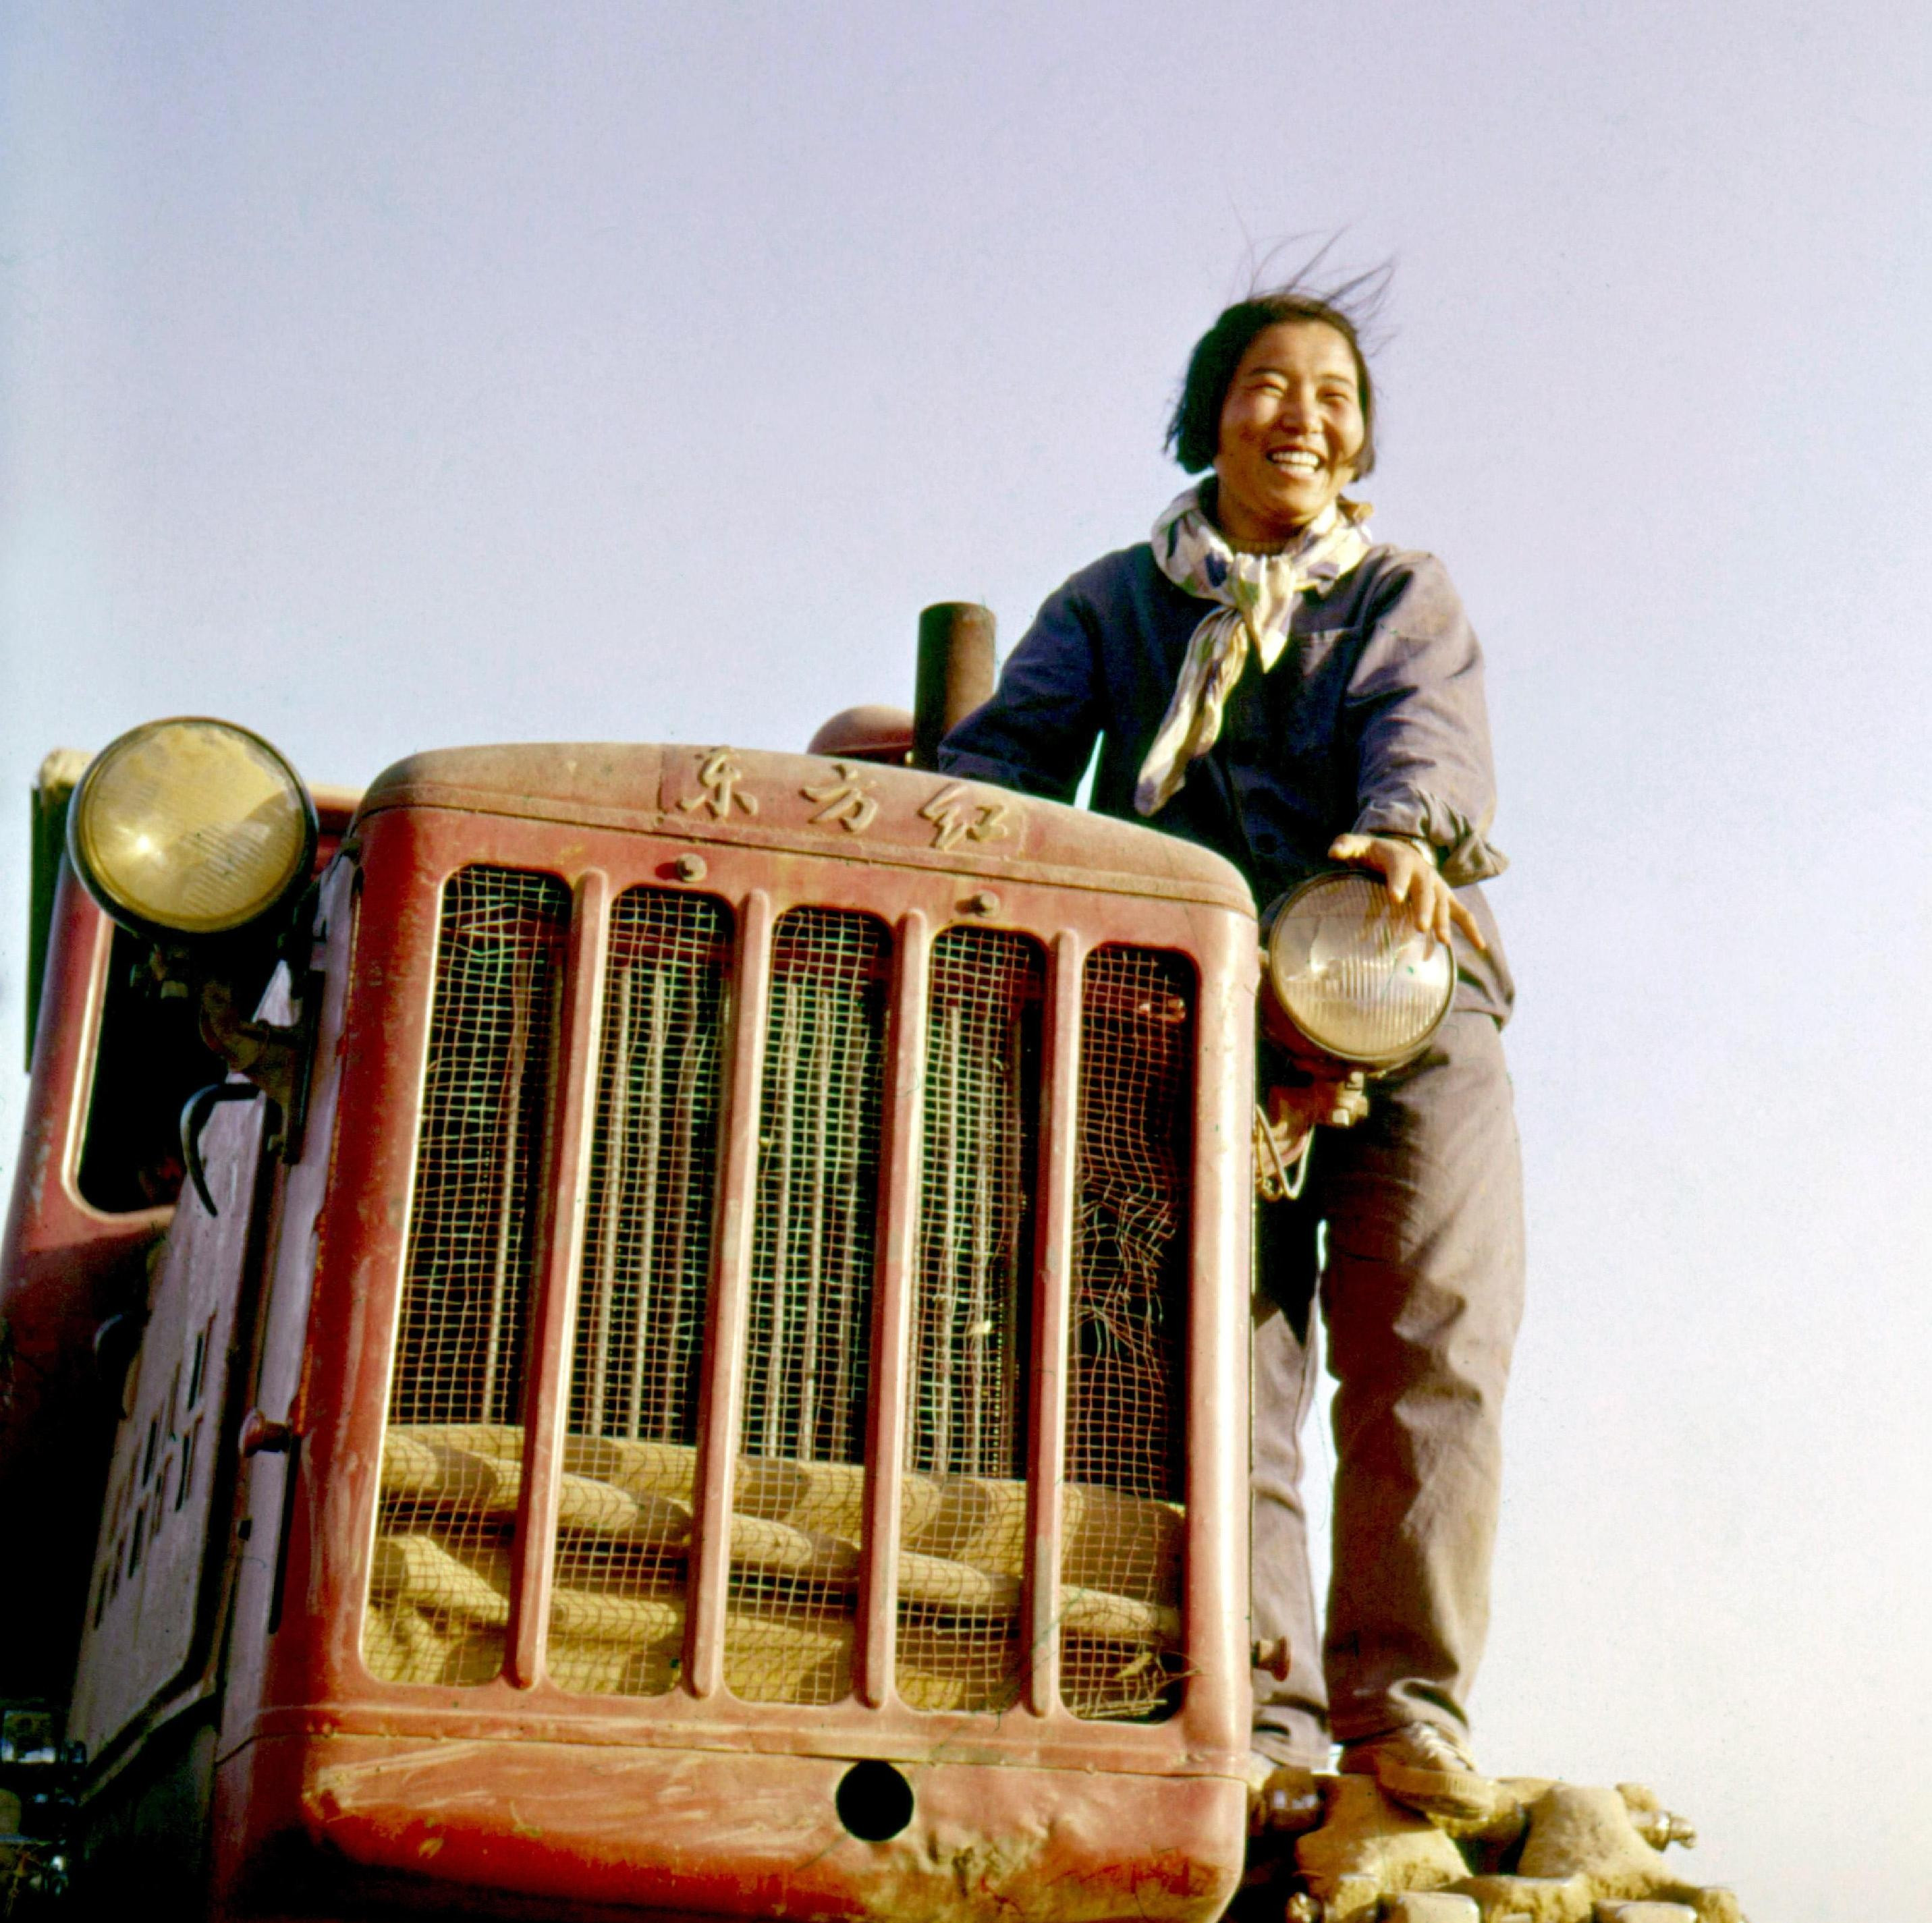 这是革命老区江西井冈山培养出的第一代女拖拉机手刘金莲